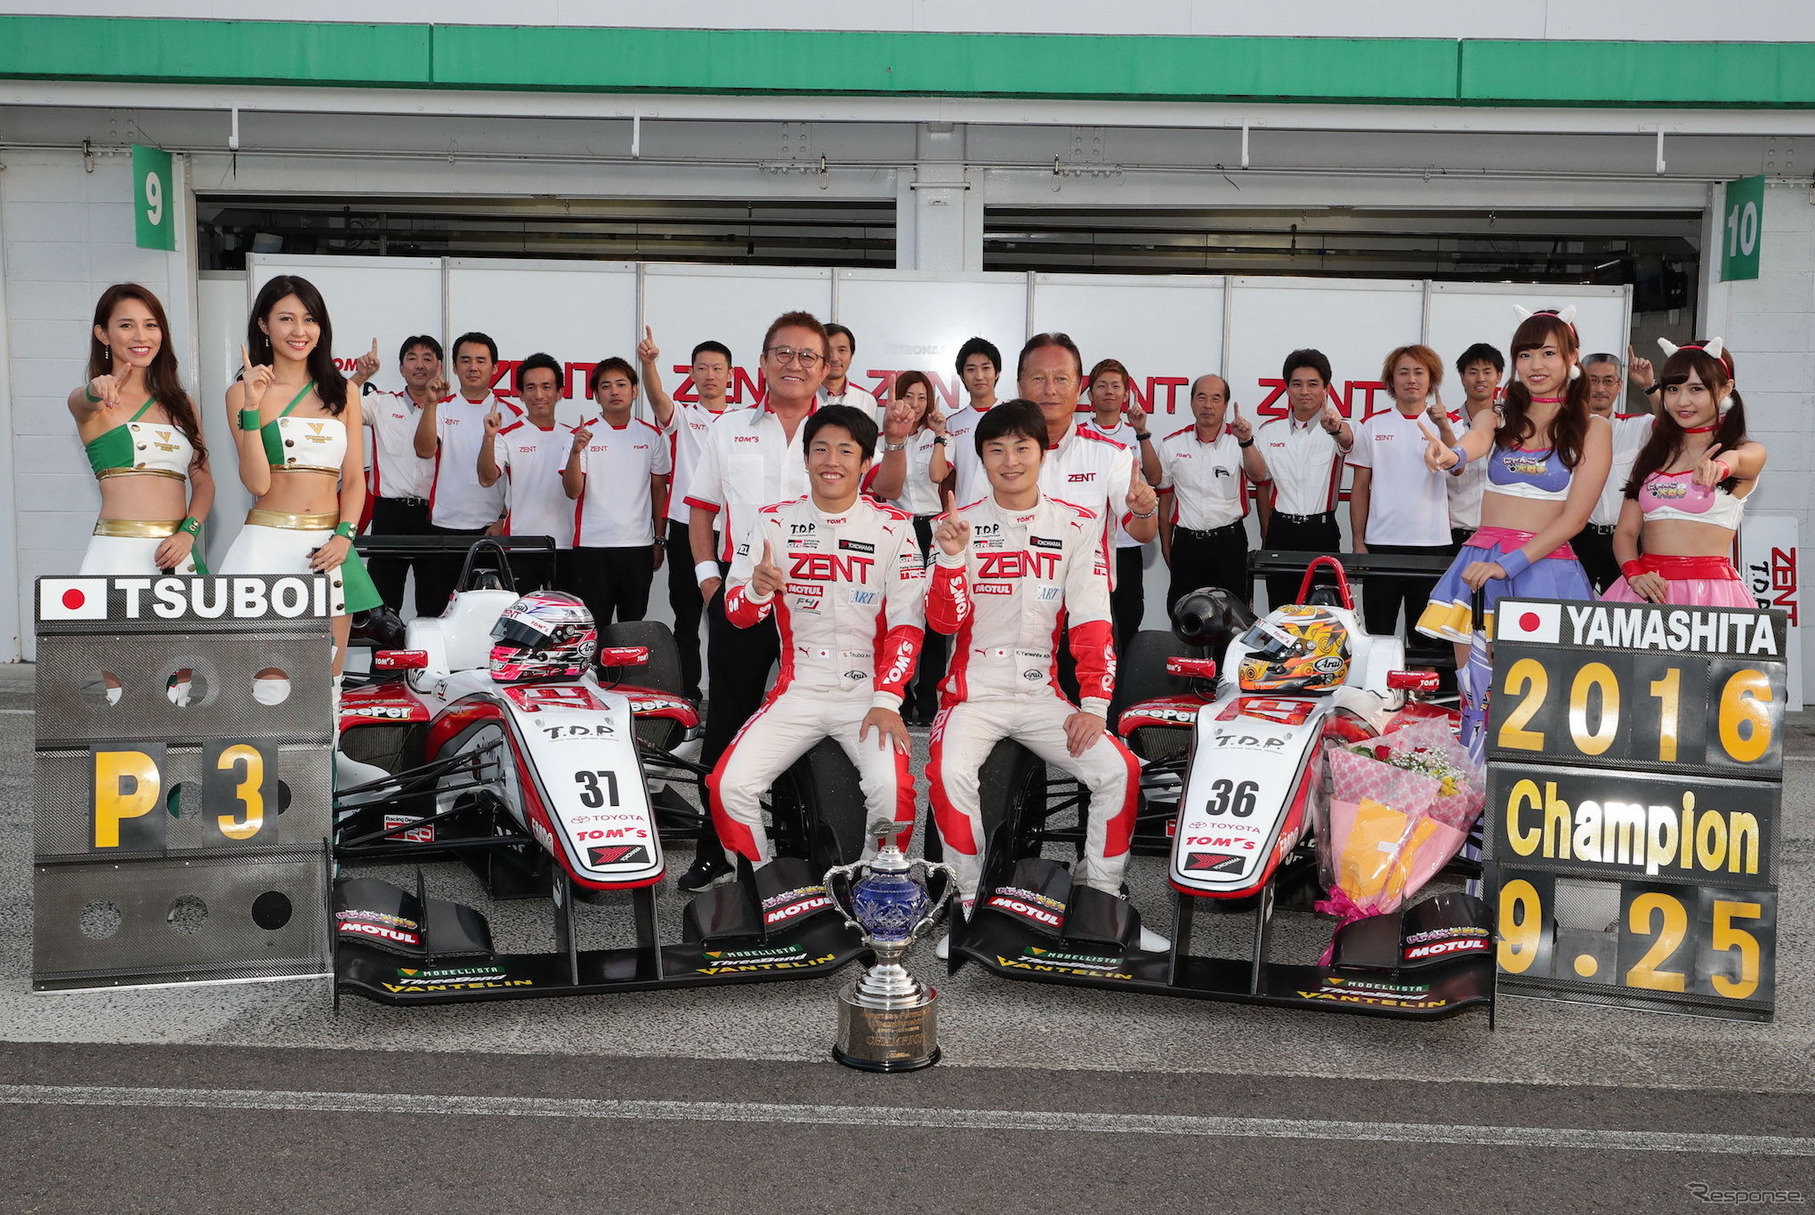 山下健太が王座獲得、F3新人の坪井翔がシリーズ3位となったトムス陣営。